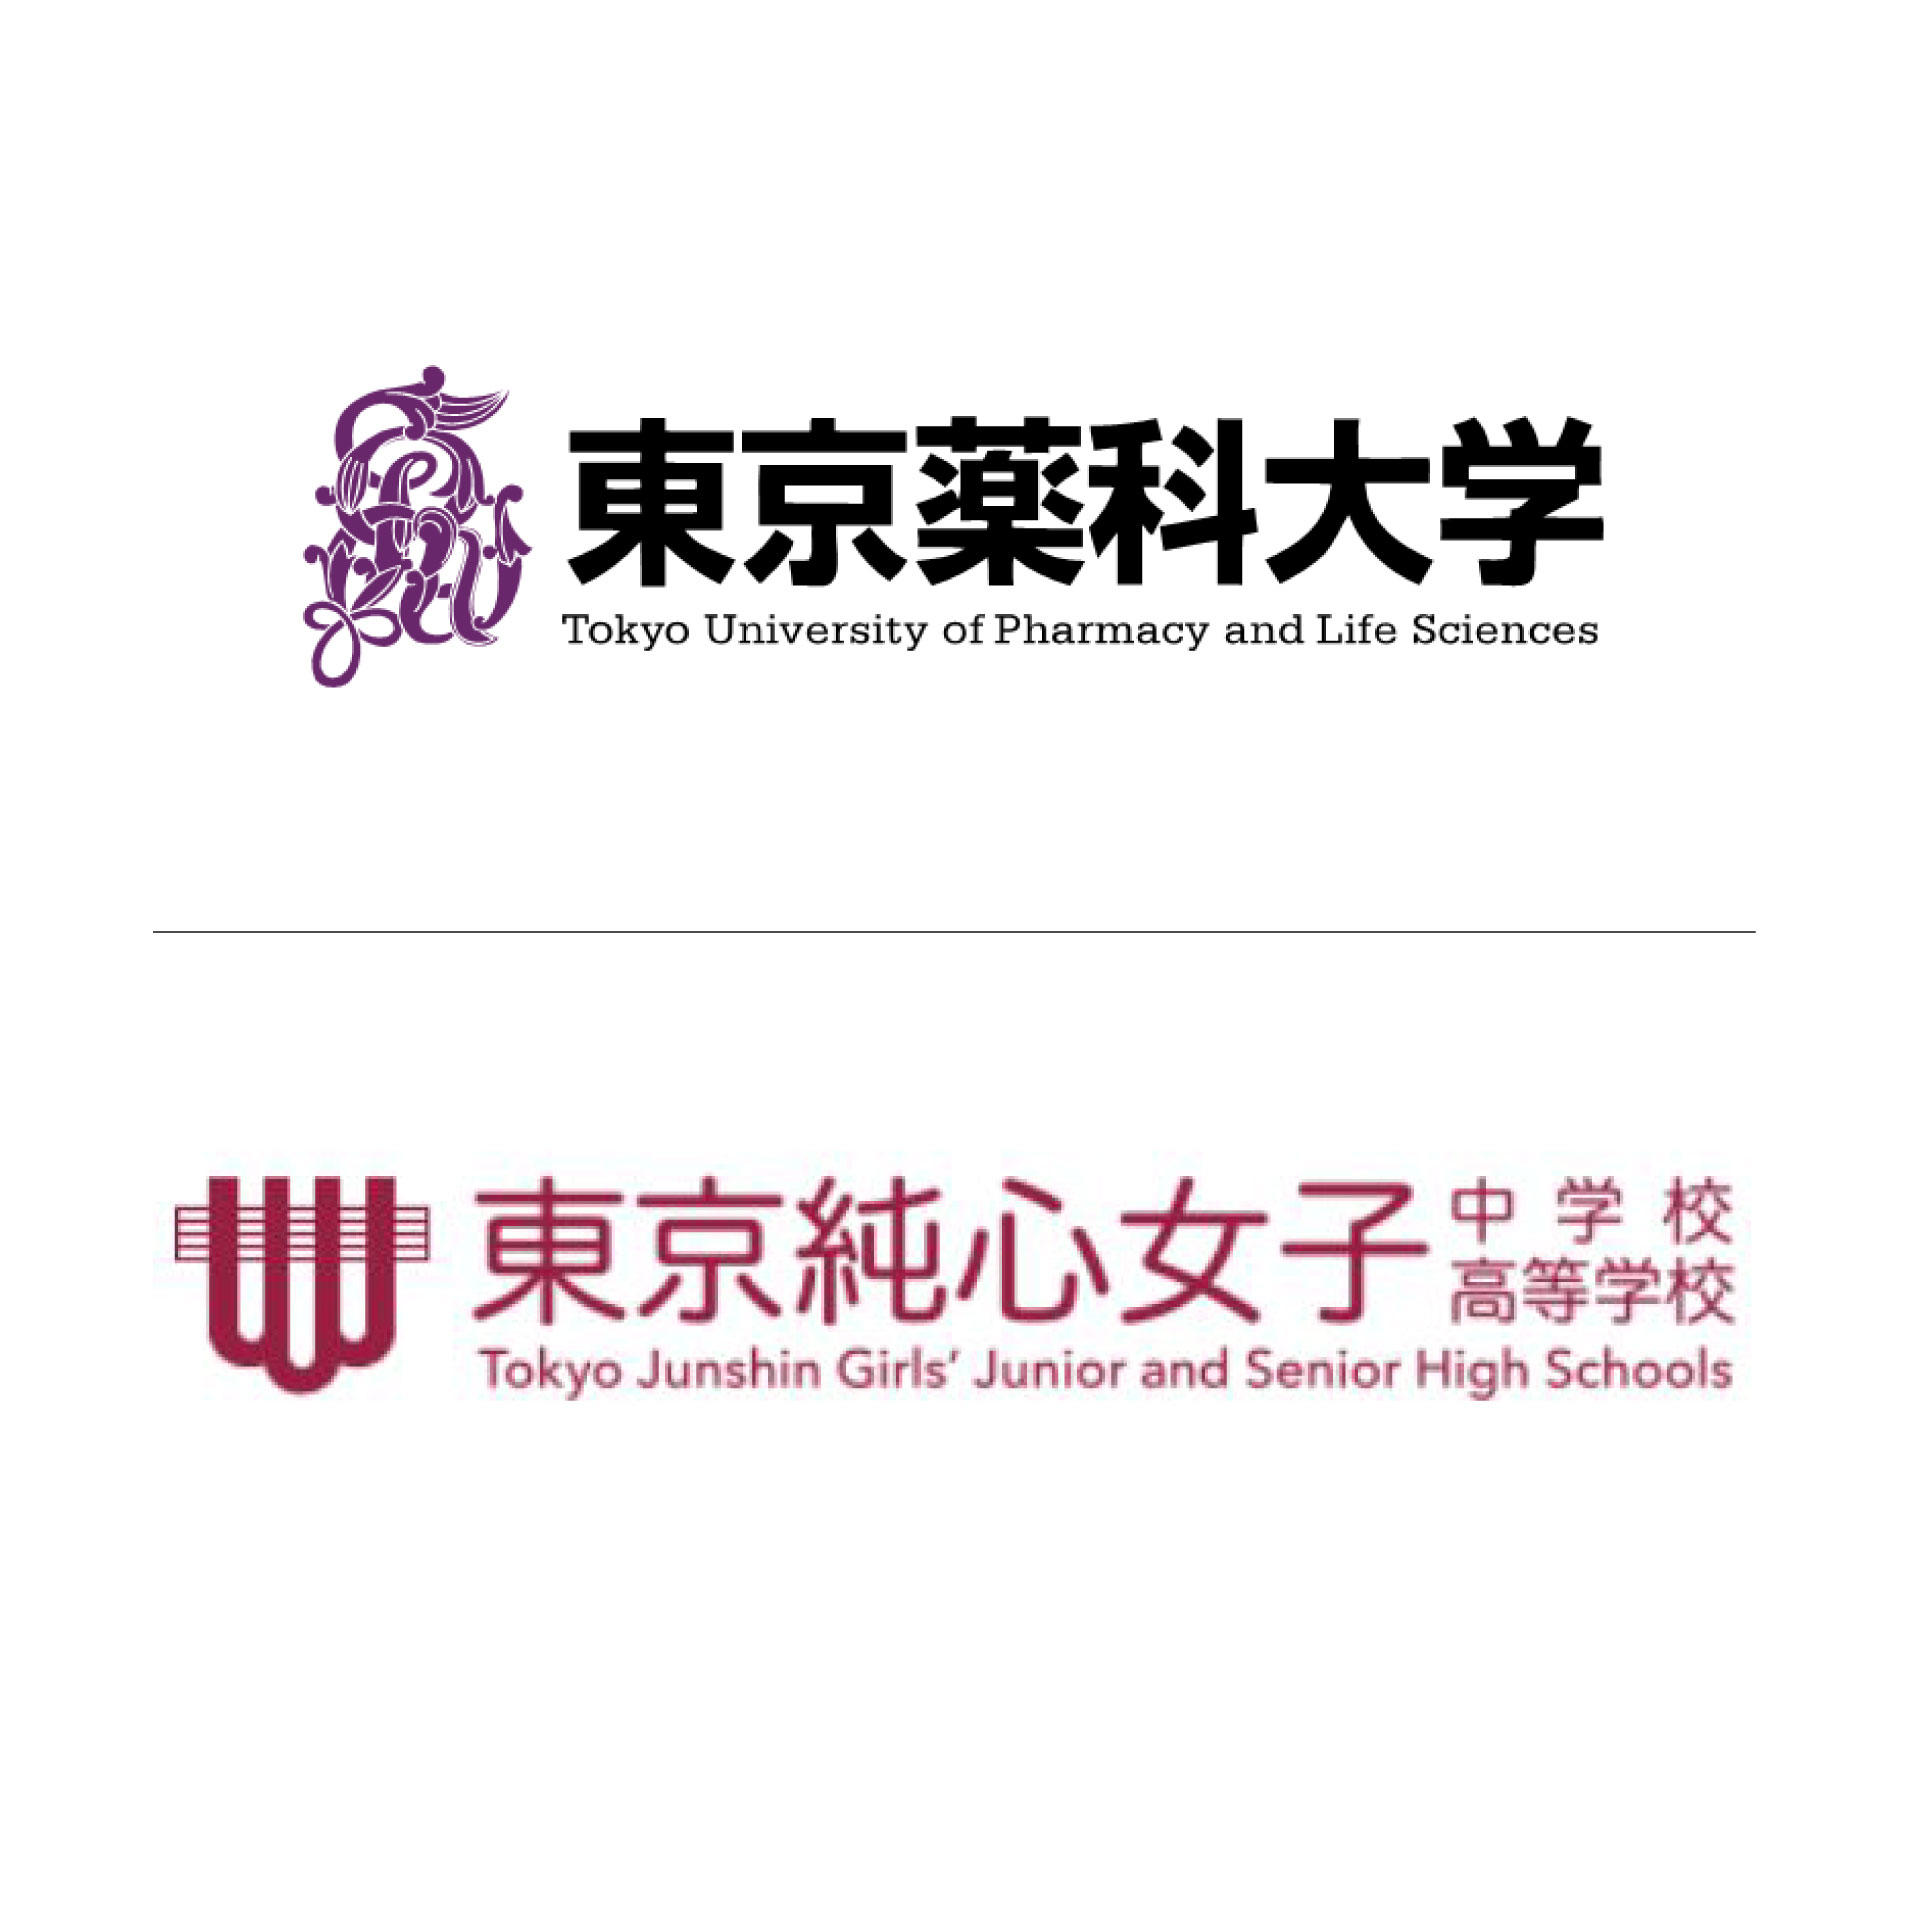 東京薬科大学が東京純心女子中学校・高等学校と高大連携協定を締結 ～女子中高生にサイエンスの楽しみと未来を伝える～